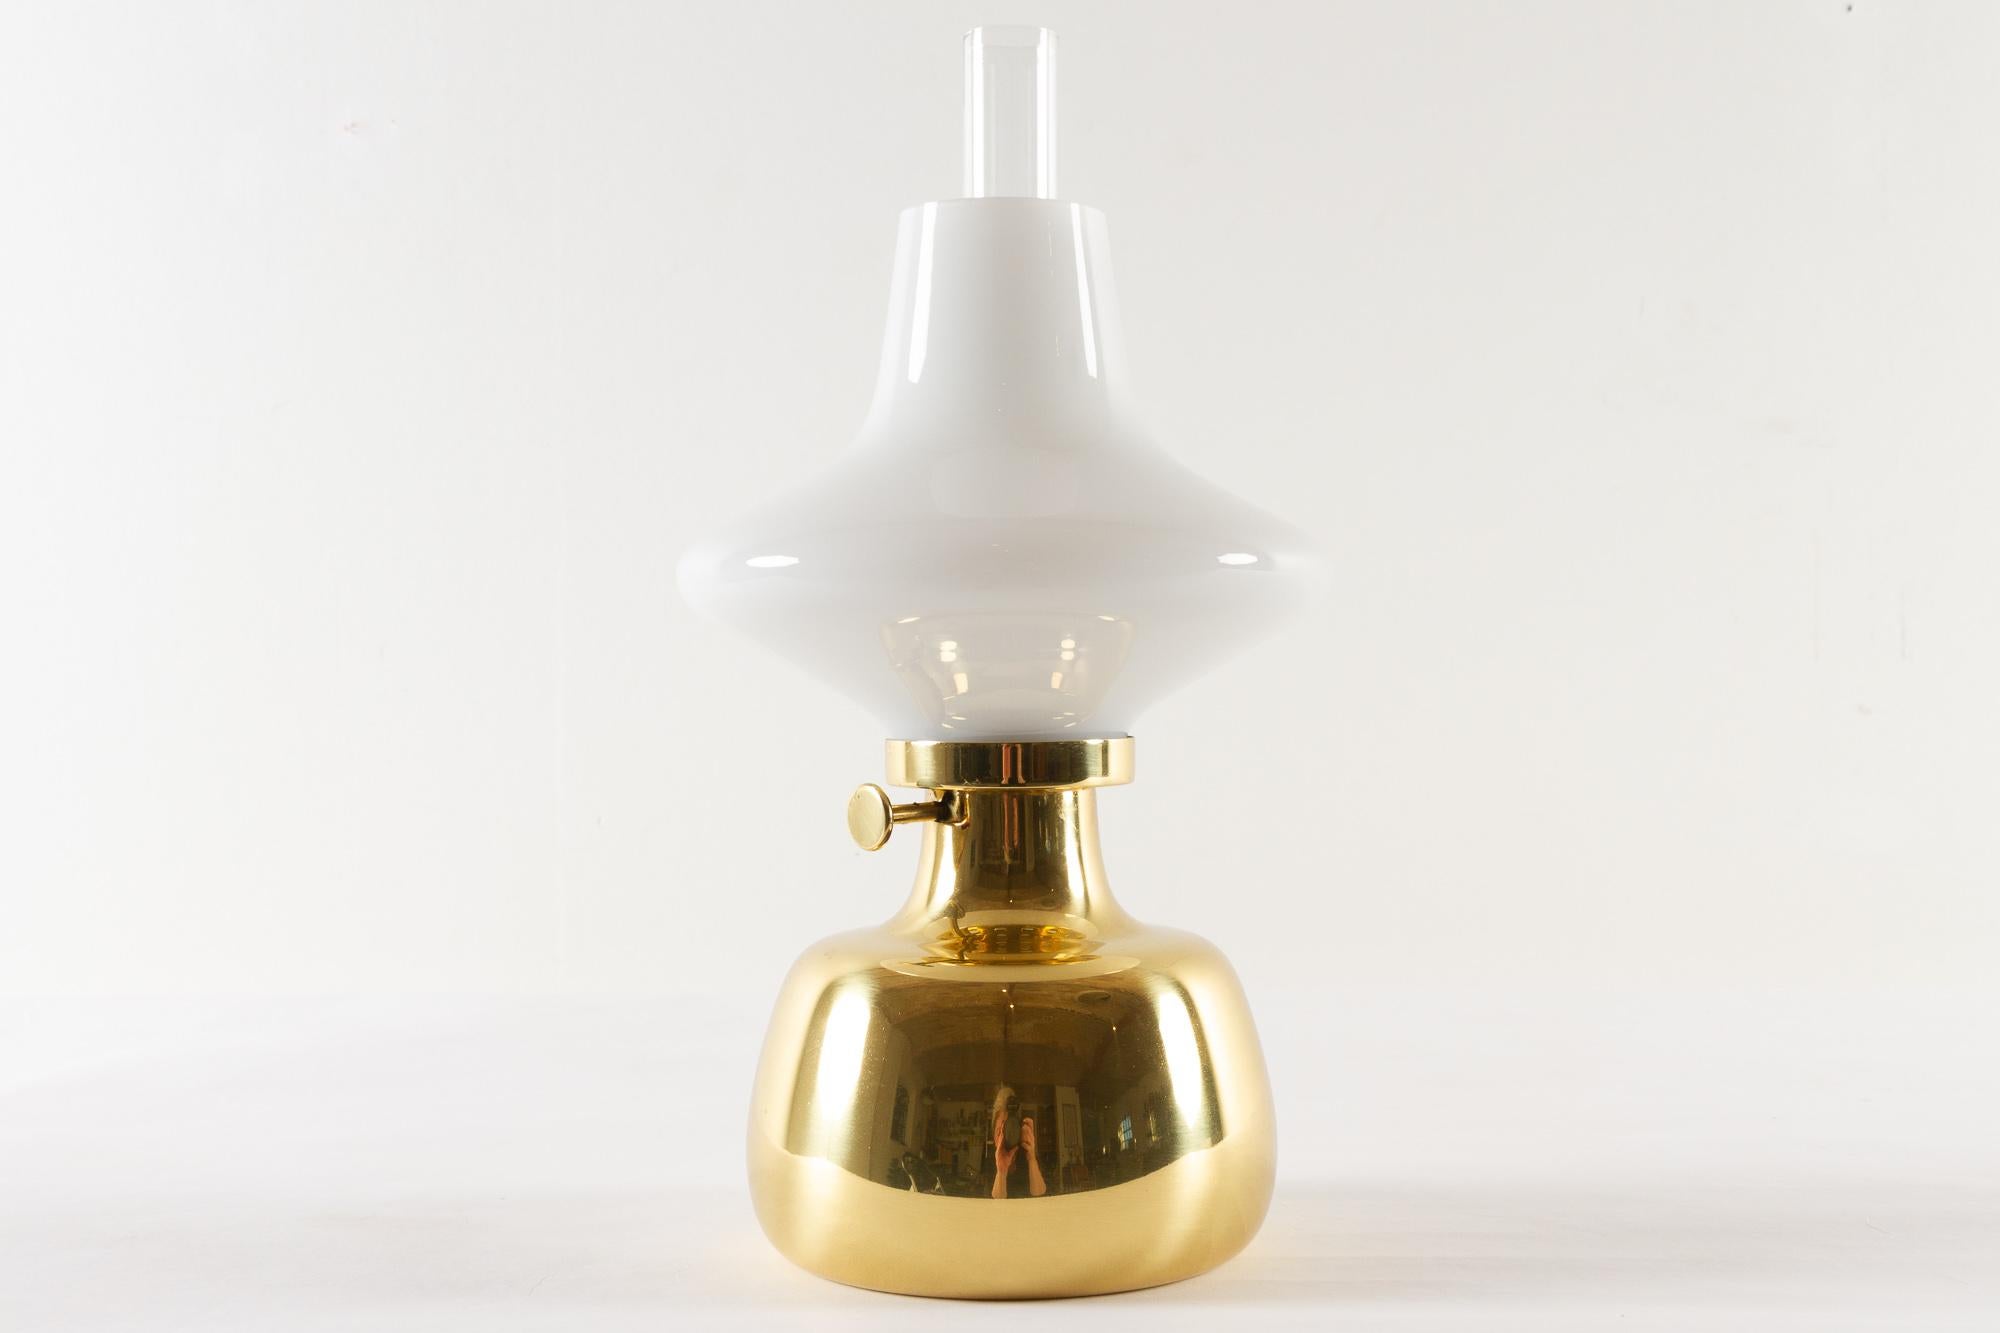 Lampe Petronella par Henning Koppel pour Louis Poulsen, années 1960.

Lampe à huile danoise en laiton et verre opalin blanc. Conçu par le designer danois Henning Koppel en 1961. Le corps de la lampe a été fabriqué à la main par Louis Poulsen au